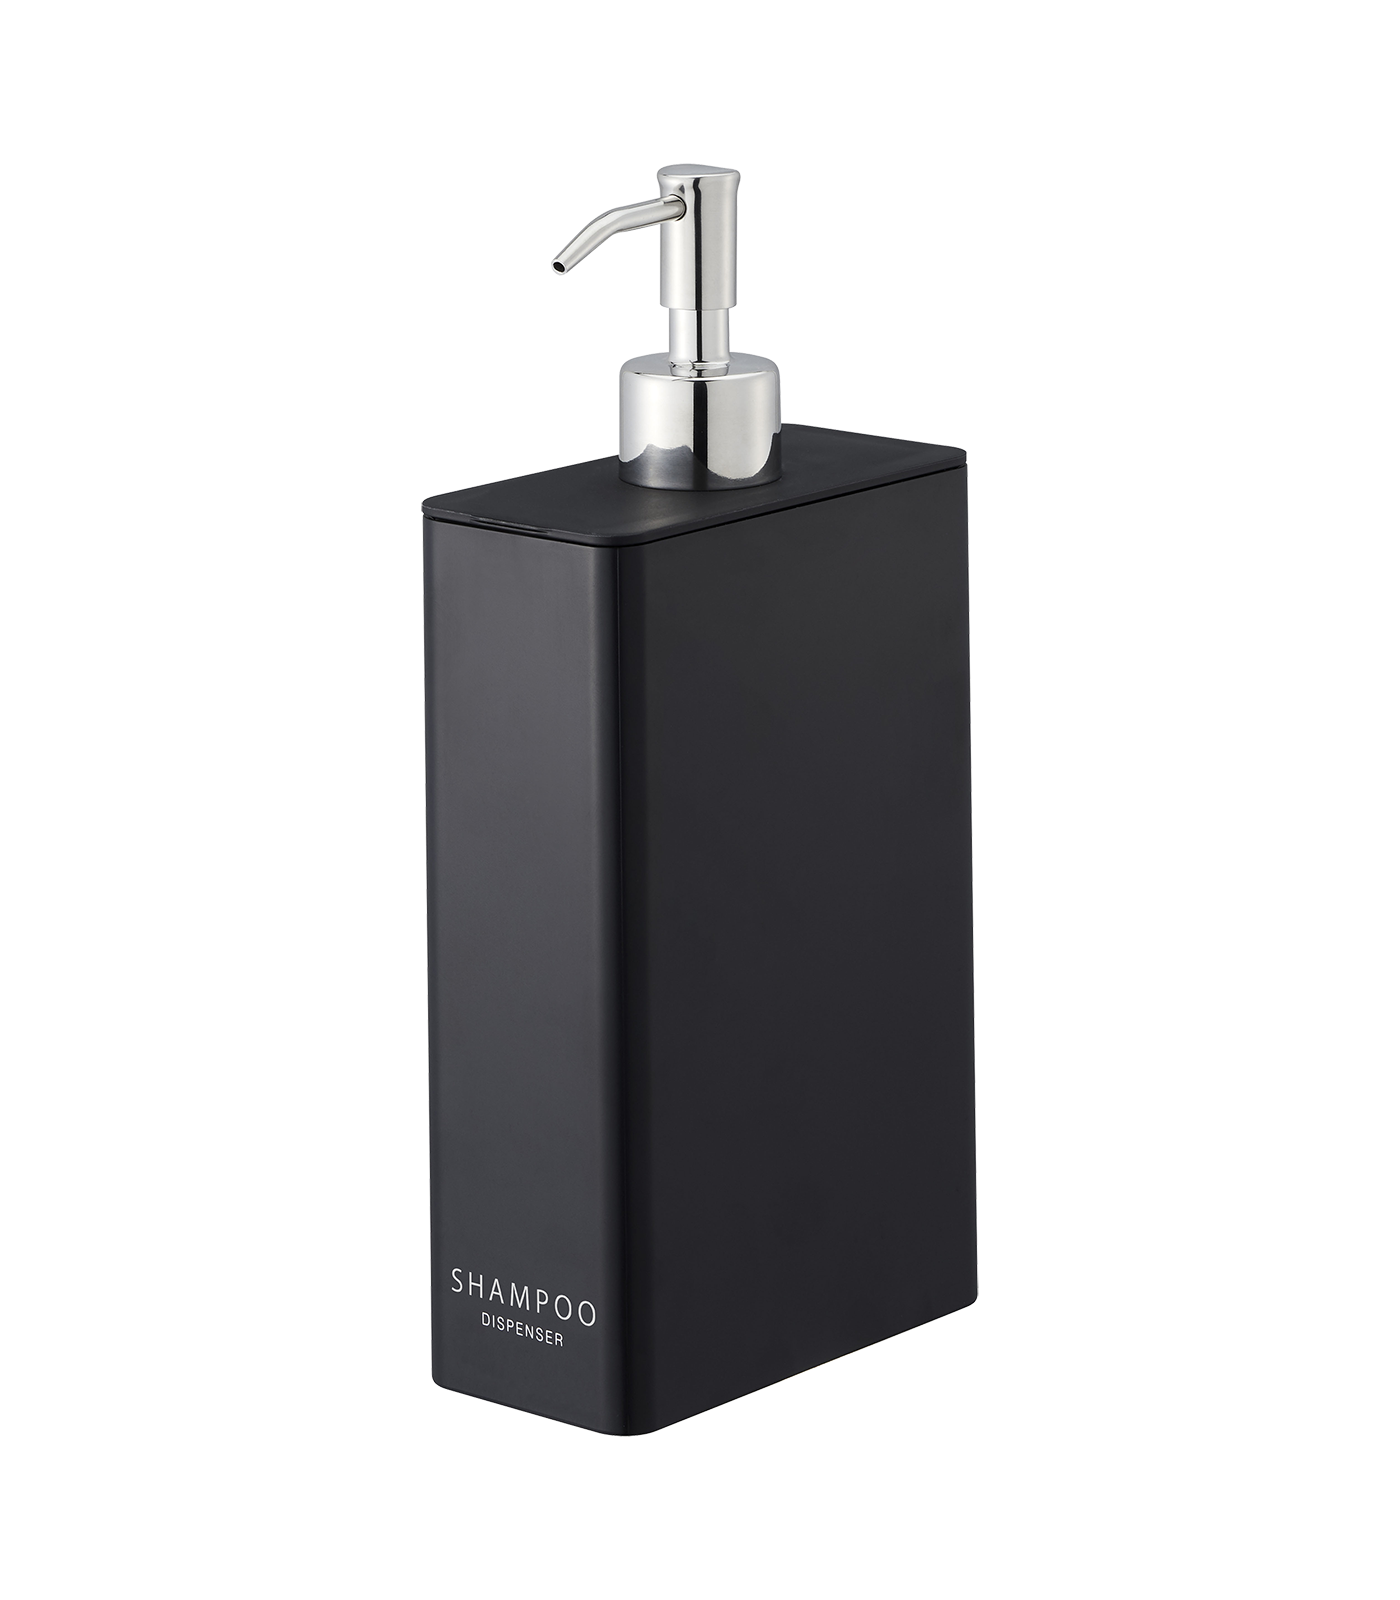 Shampoo Dispenser - Shampoo